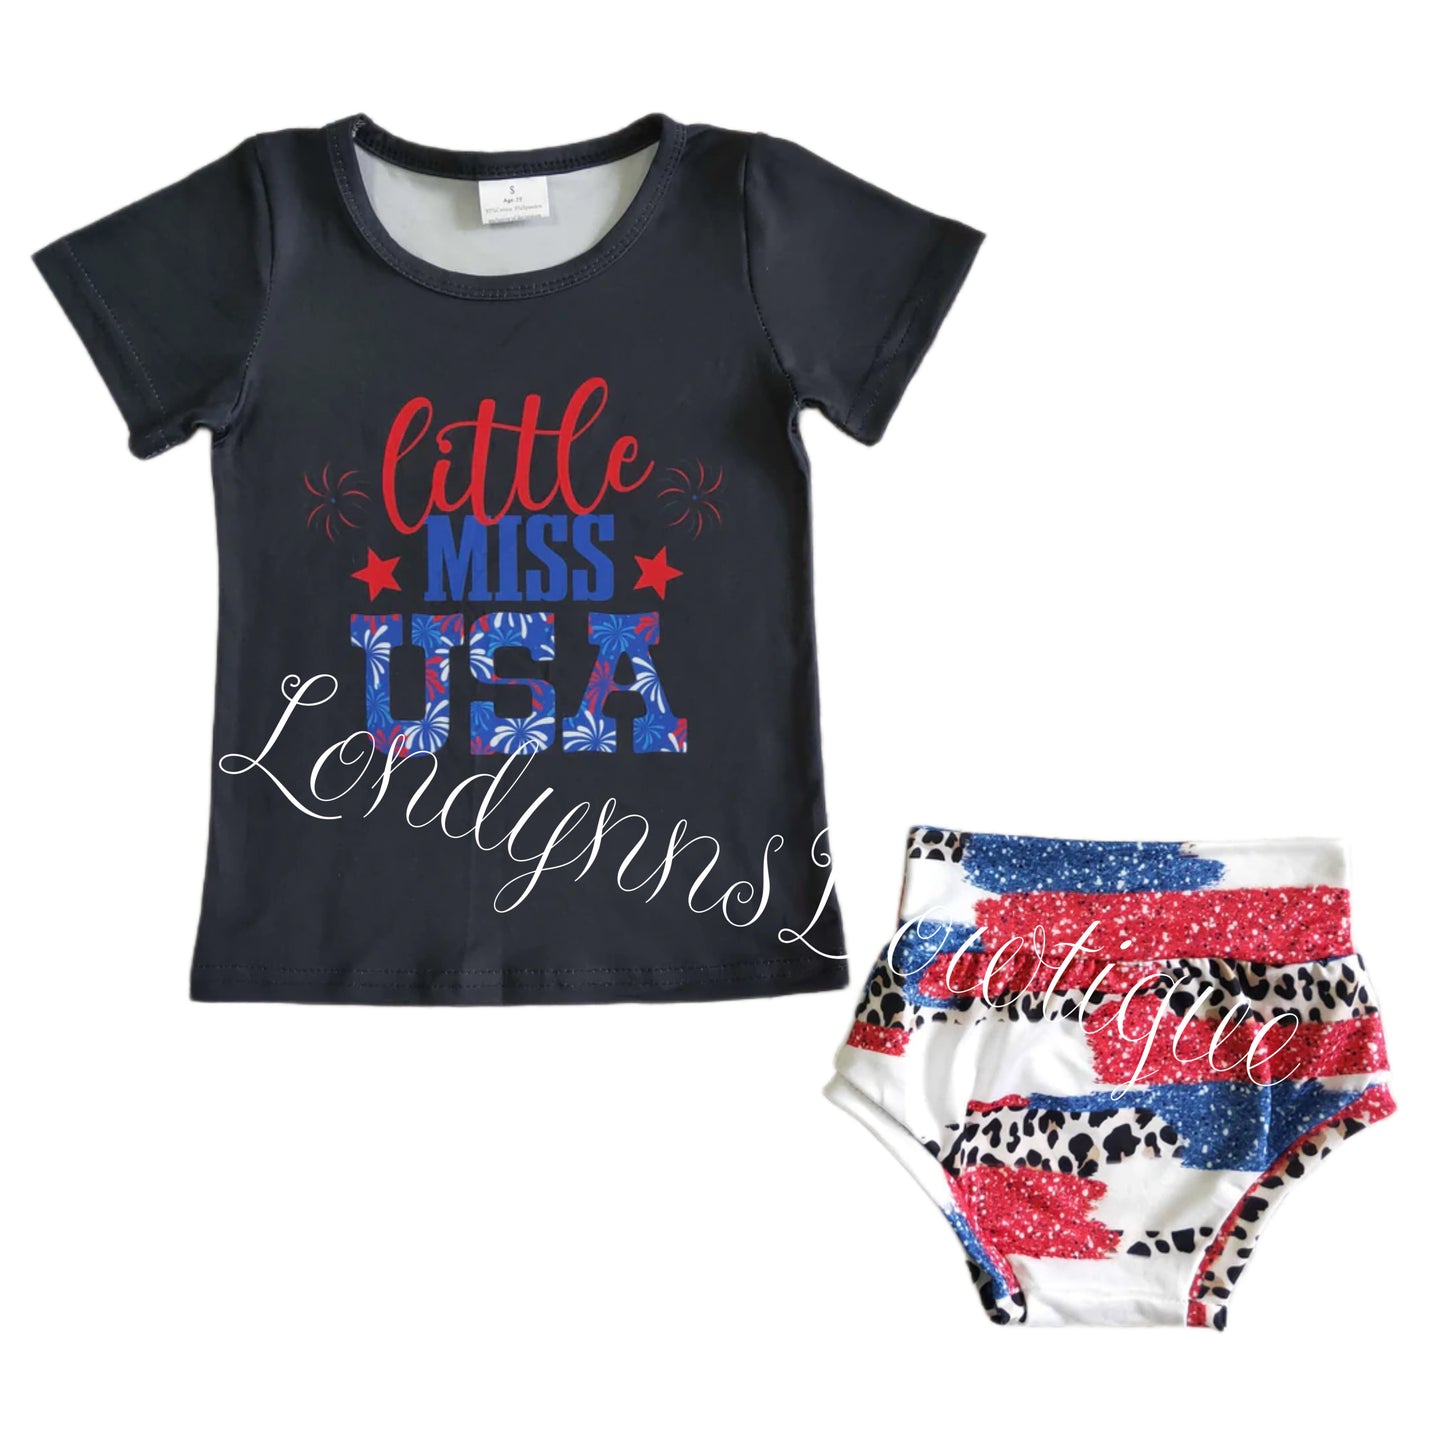 Little miss USA Bummie shirt set